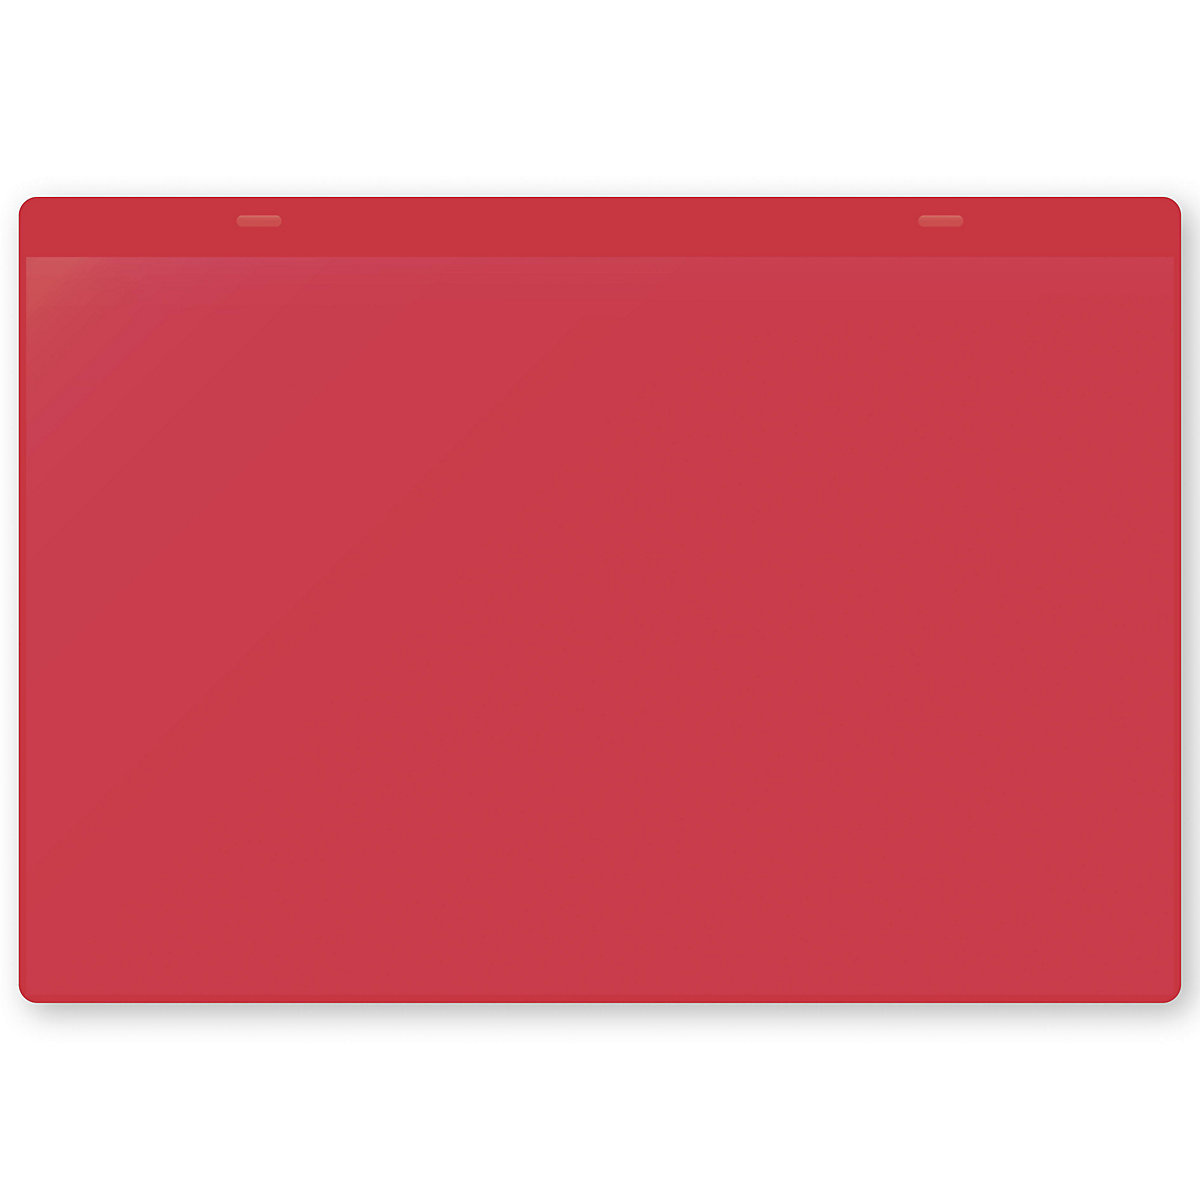 Öntapadó dokumentumtartó tasakok, DIN A4, fekvő, cs. e. 50 db, piros